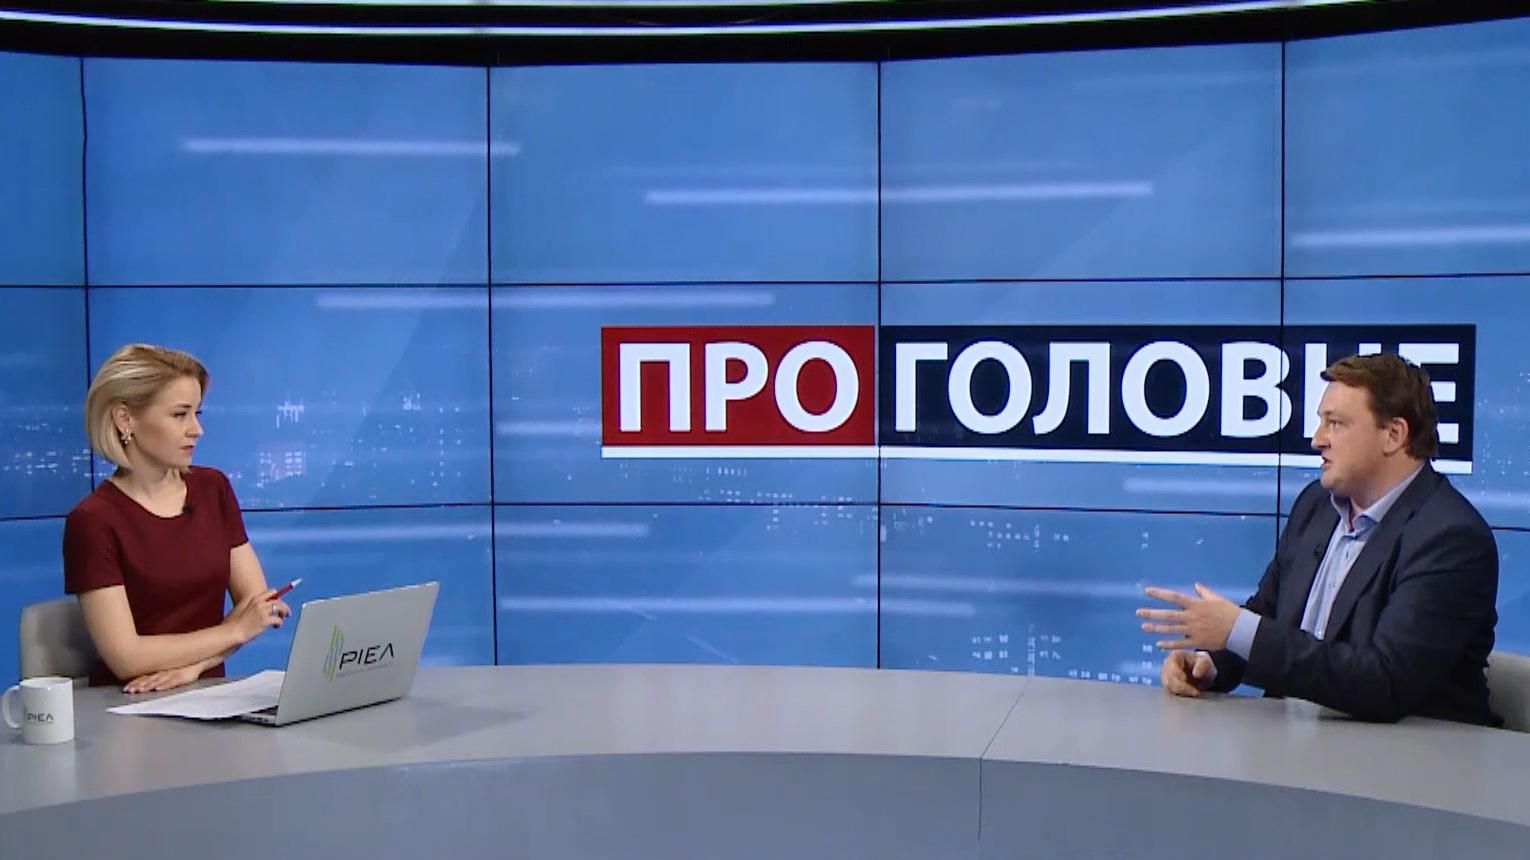 Коломойский отсудит у украинцев 2 миллиарда, если выиграет удобный для него кандидат, – Фурса